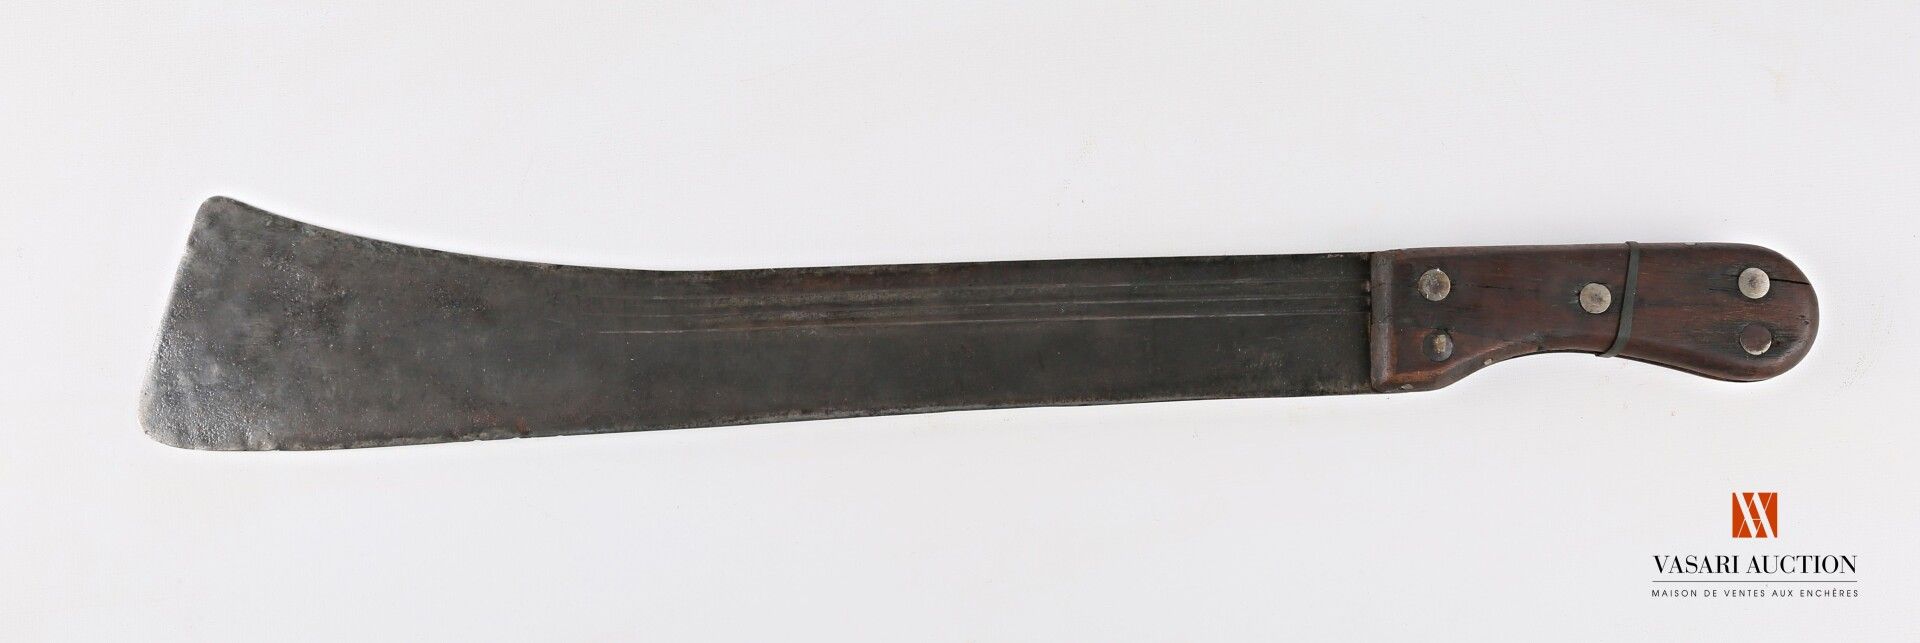 Null Machete Klinge 44 cm, LT 60 cm, Holzplatten, Verschleiß, Oxidation, SF

Anf&hellip;